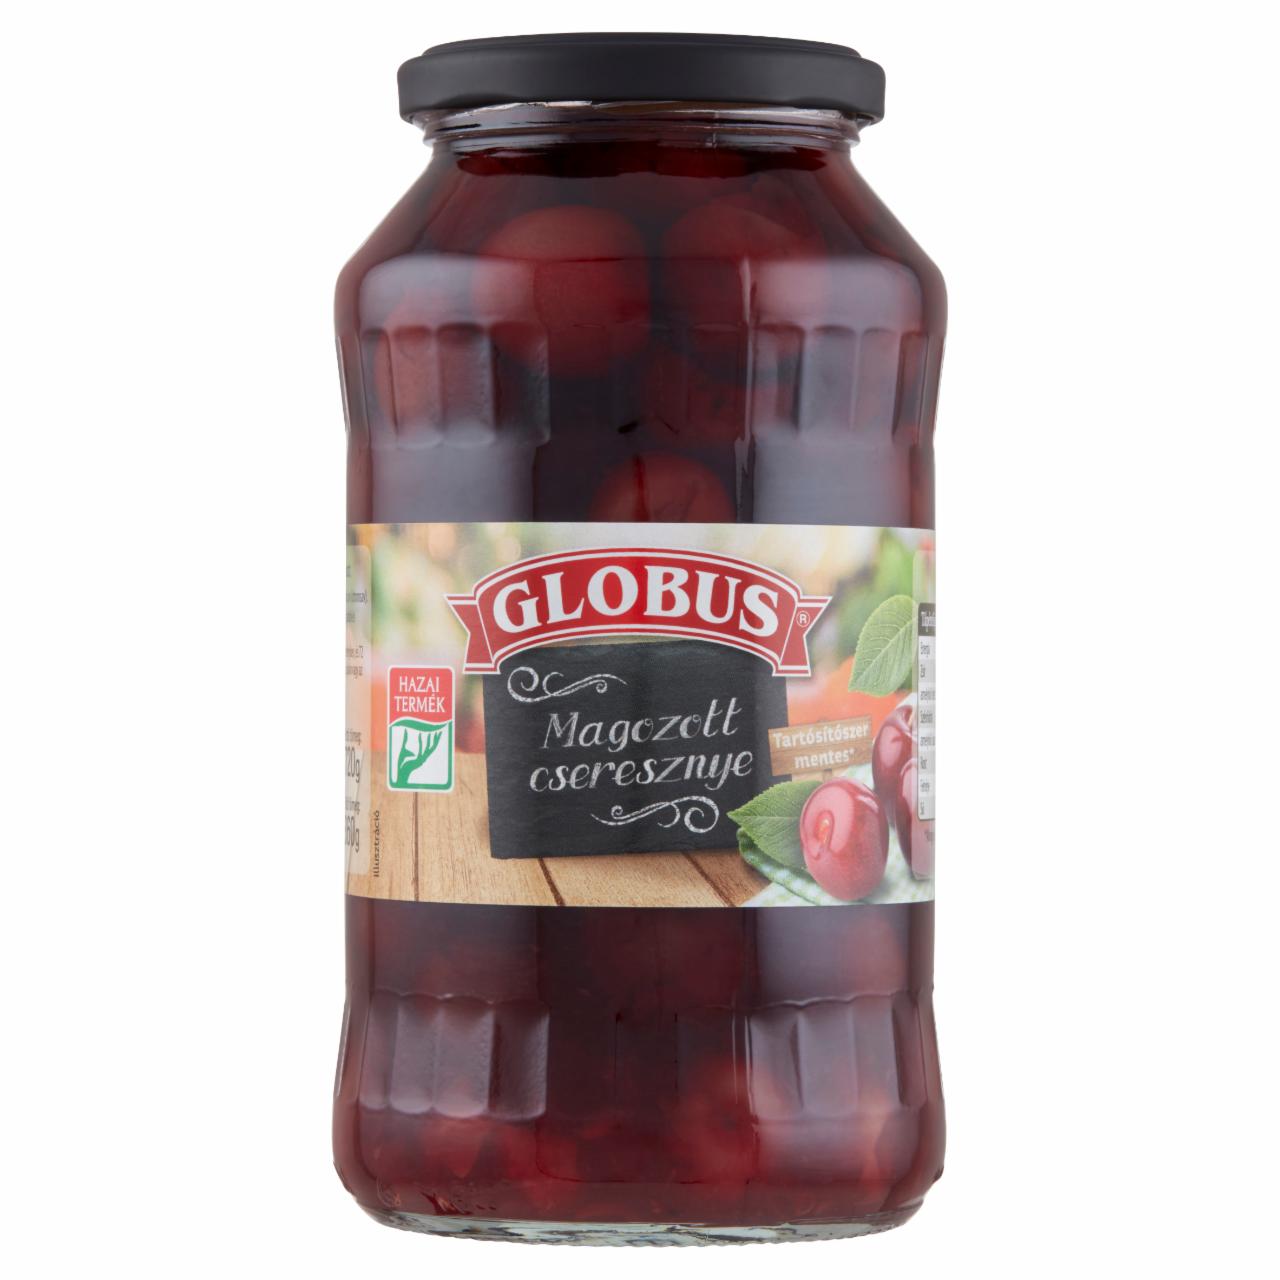 Képek - Globus magozott cseresznye 720 g